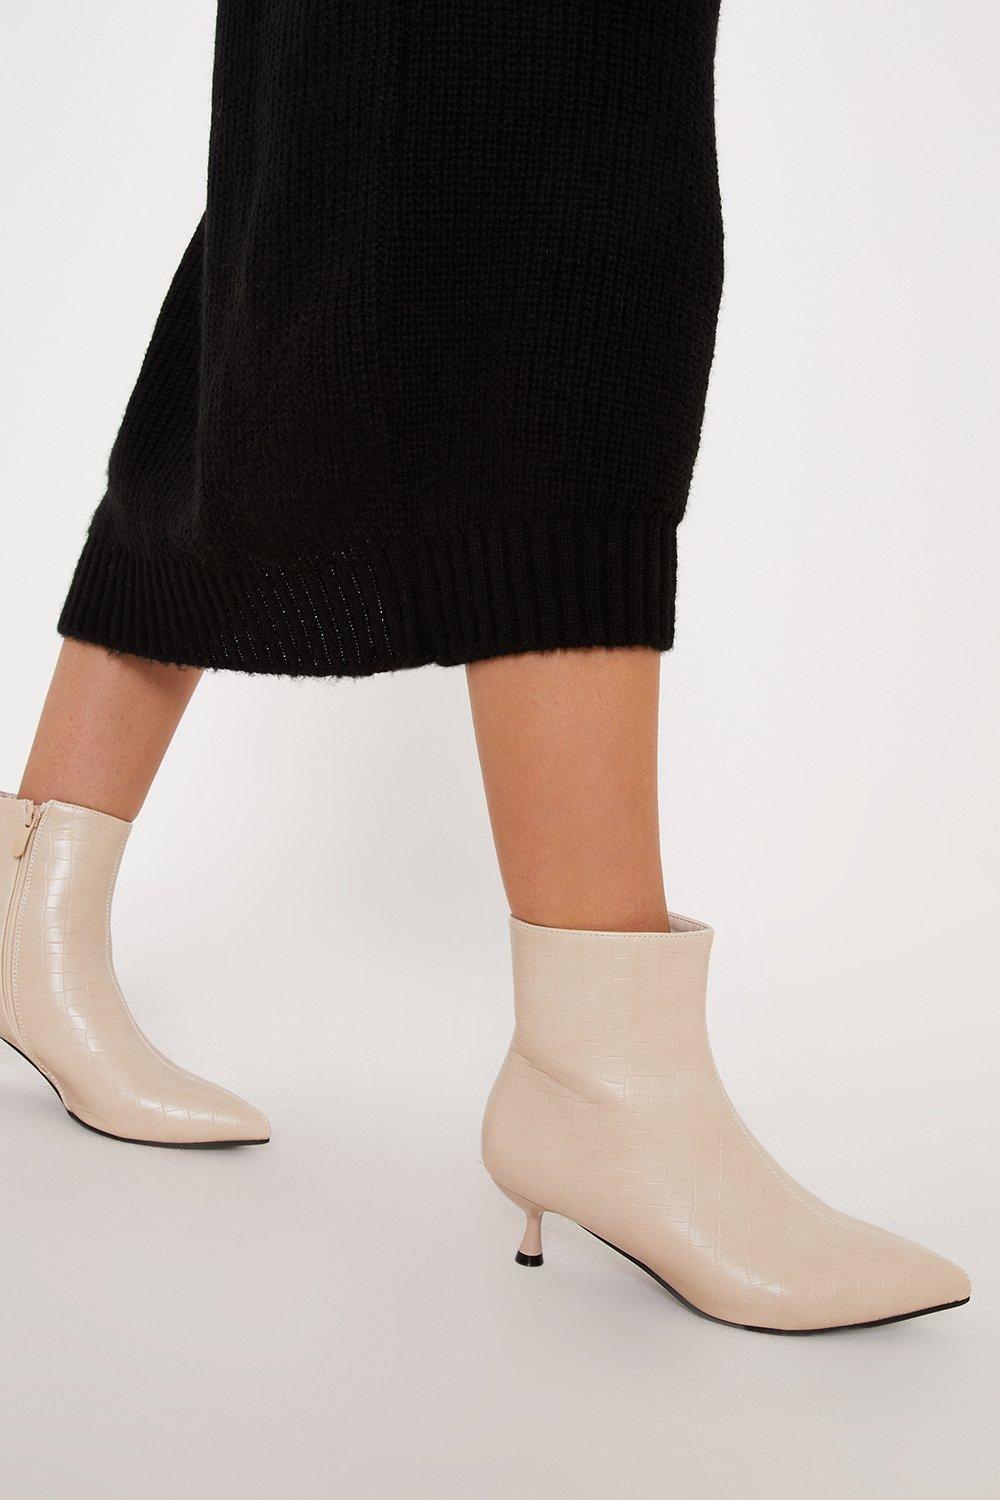 Women’s Wide Fit Alia Kitten Heel Boots - beige - 3